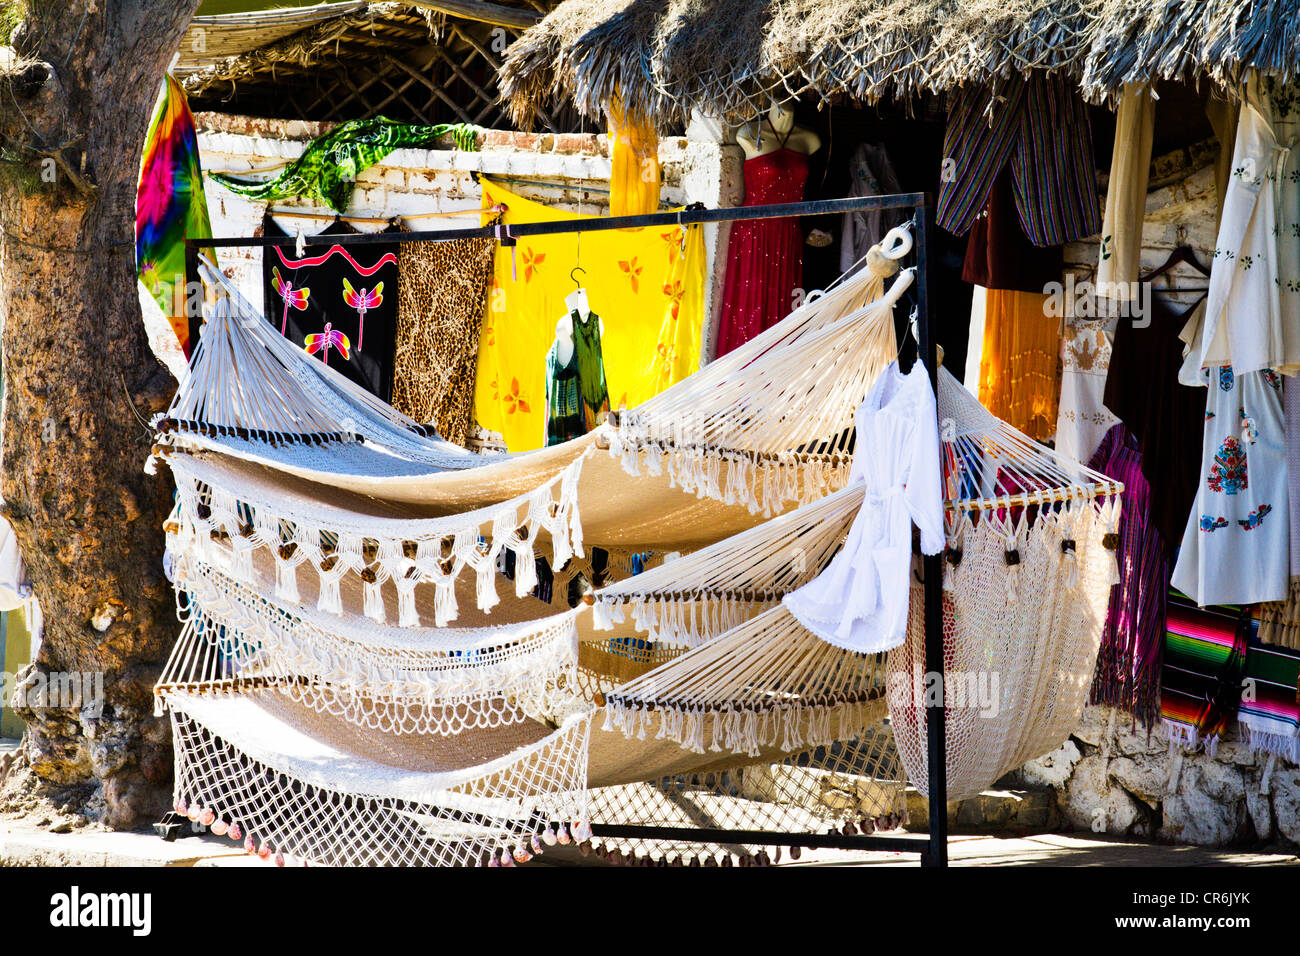 Hammock and clothing display in outdoor shop in 'Todos Santos Baja Mexico Stock Photo